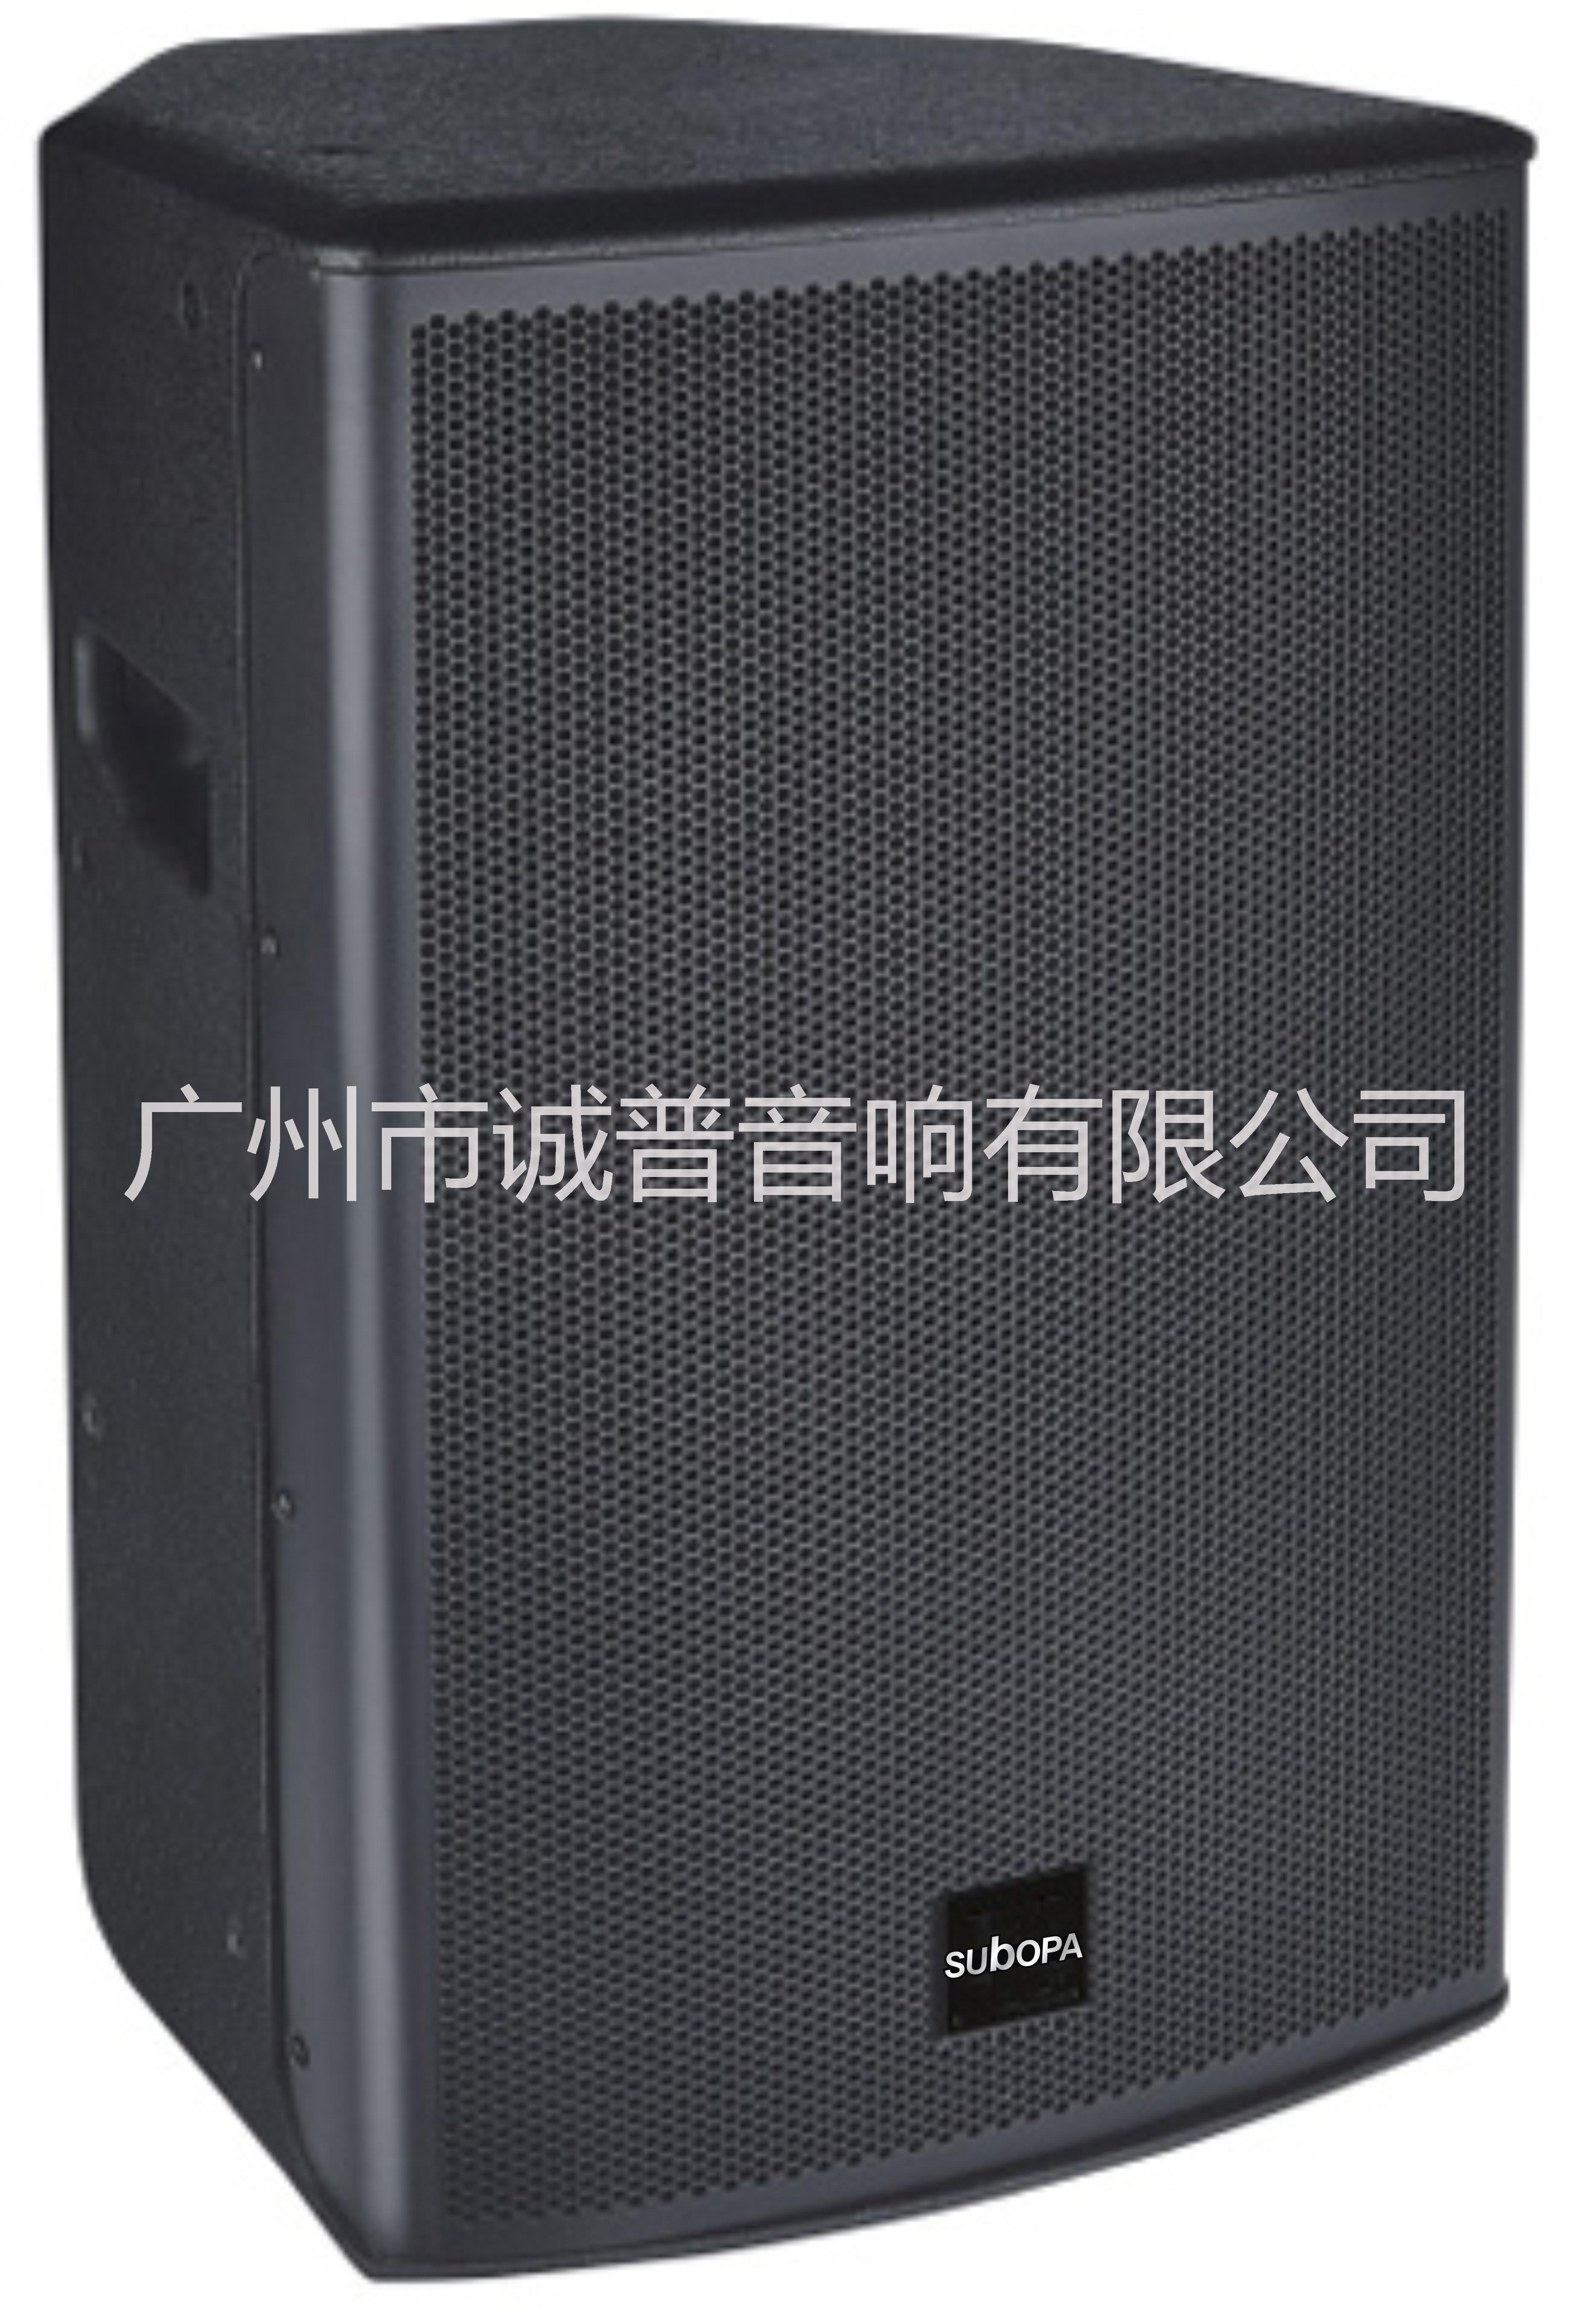 10寸 专业音箱CX-10